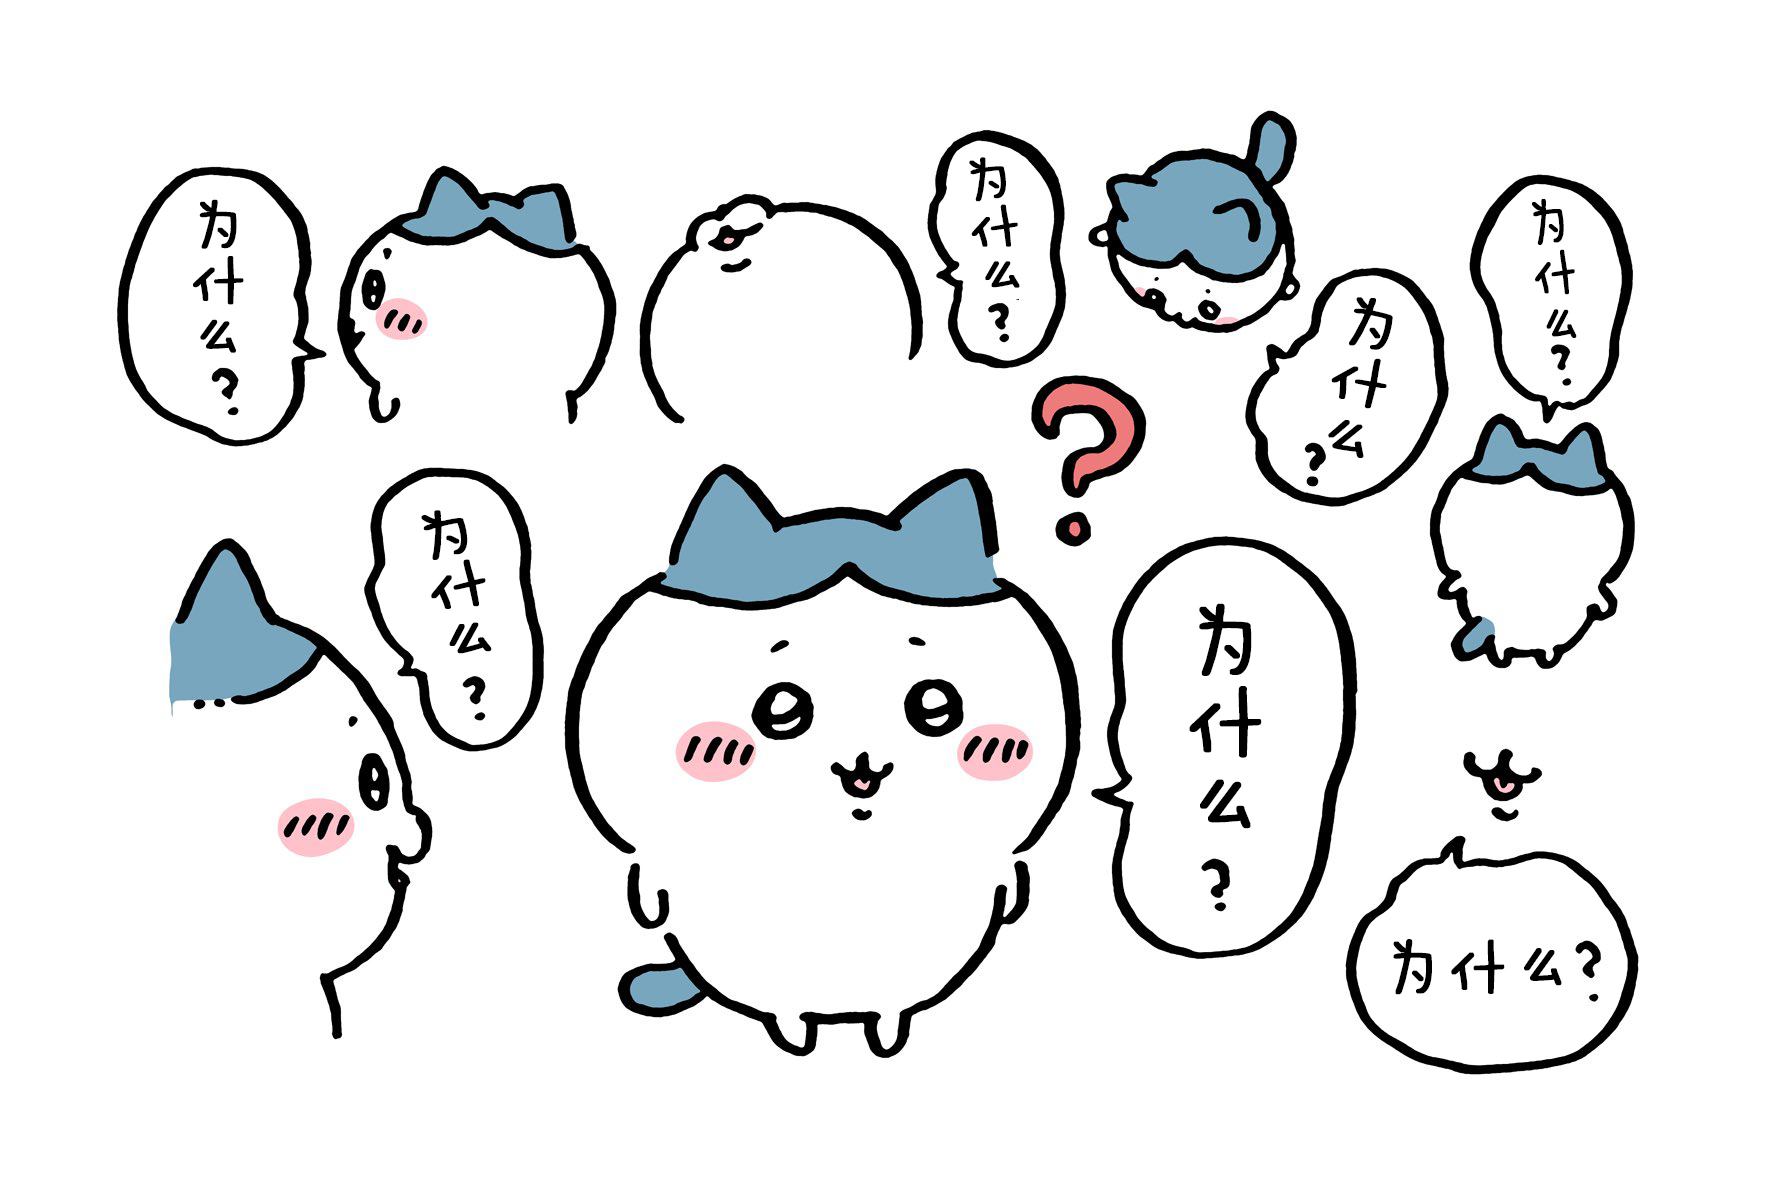 【Chiikawa/吉伊卡哇】中文漫画⑨ (2022.04.04-2022.05.08)